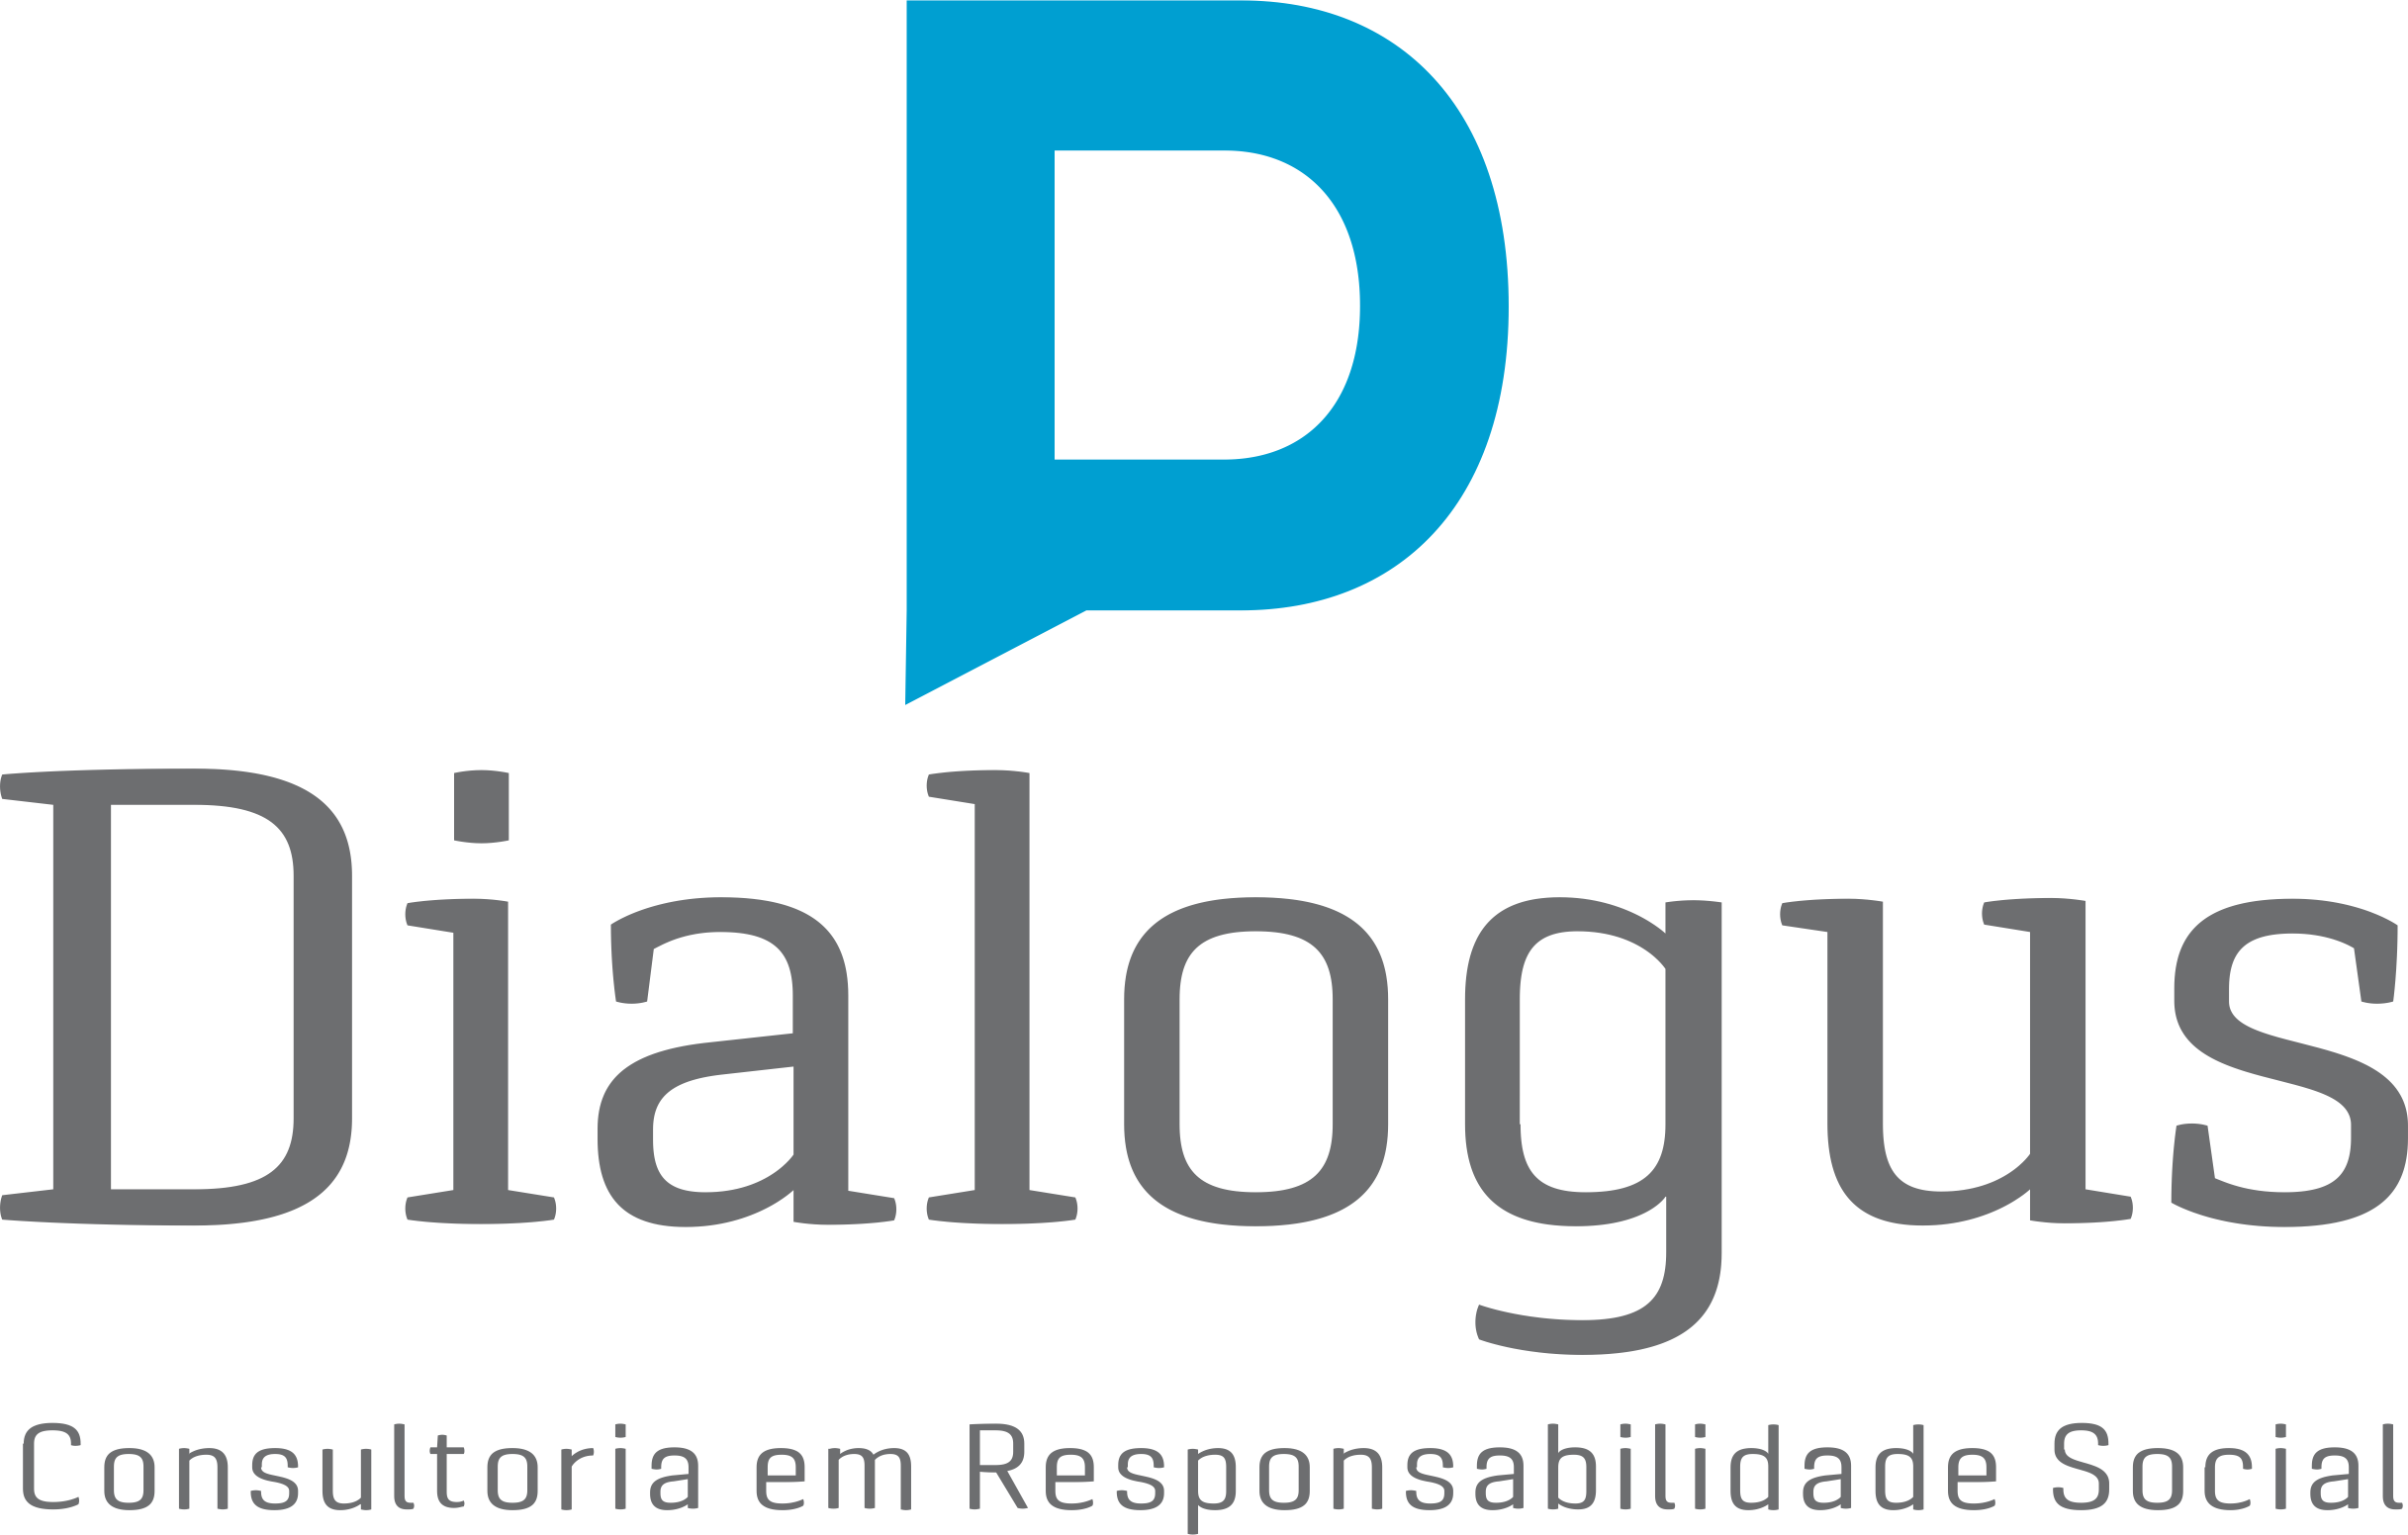 Dialogus Responsabilidade Social - Consultoria - Incrementos de Receita e Rentabilidade - Fortaleza/CE